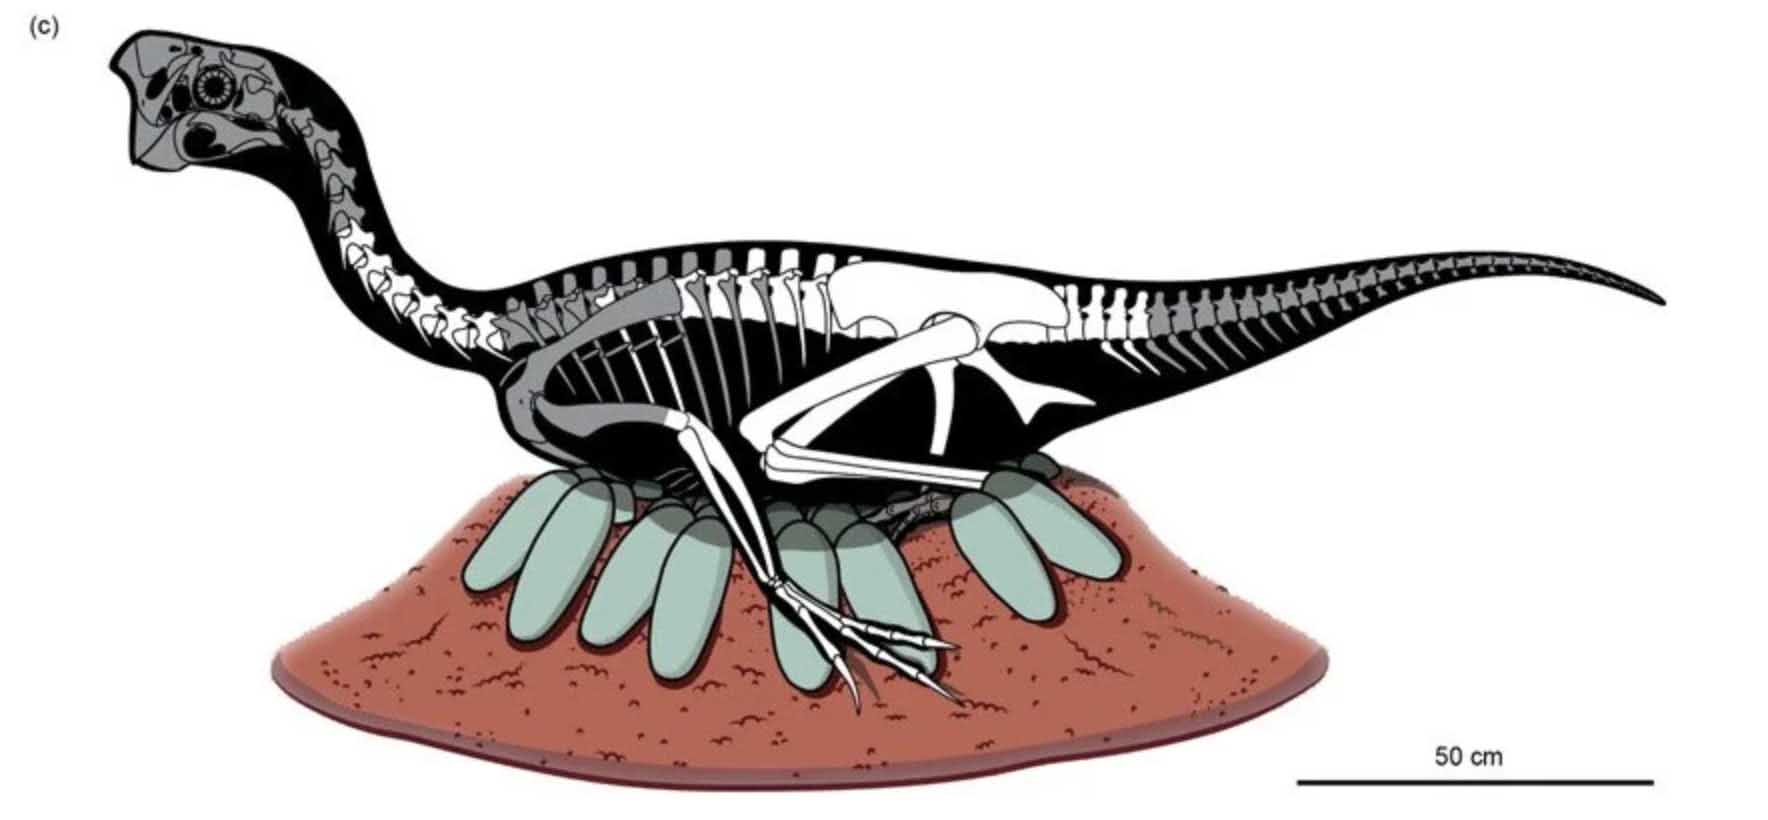 เอ็มบริโอไดโนเสาร์ที่เก็บรักษาไว้อย่างไม่น่าเชื่อที่พบในไข่ฟอสซิล 2